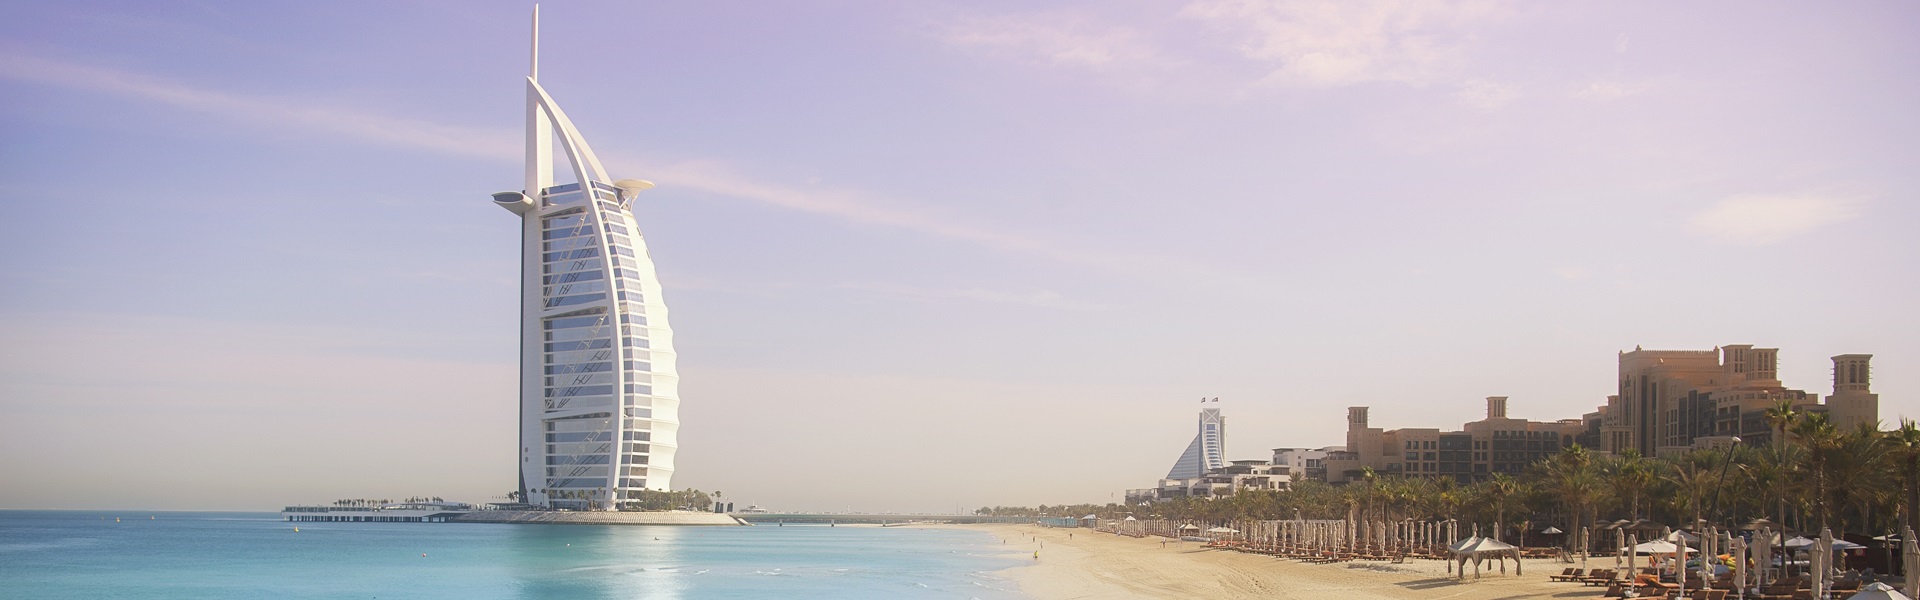 Экскурсии в Дубае Объединенные Арабские Эмираты